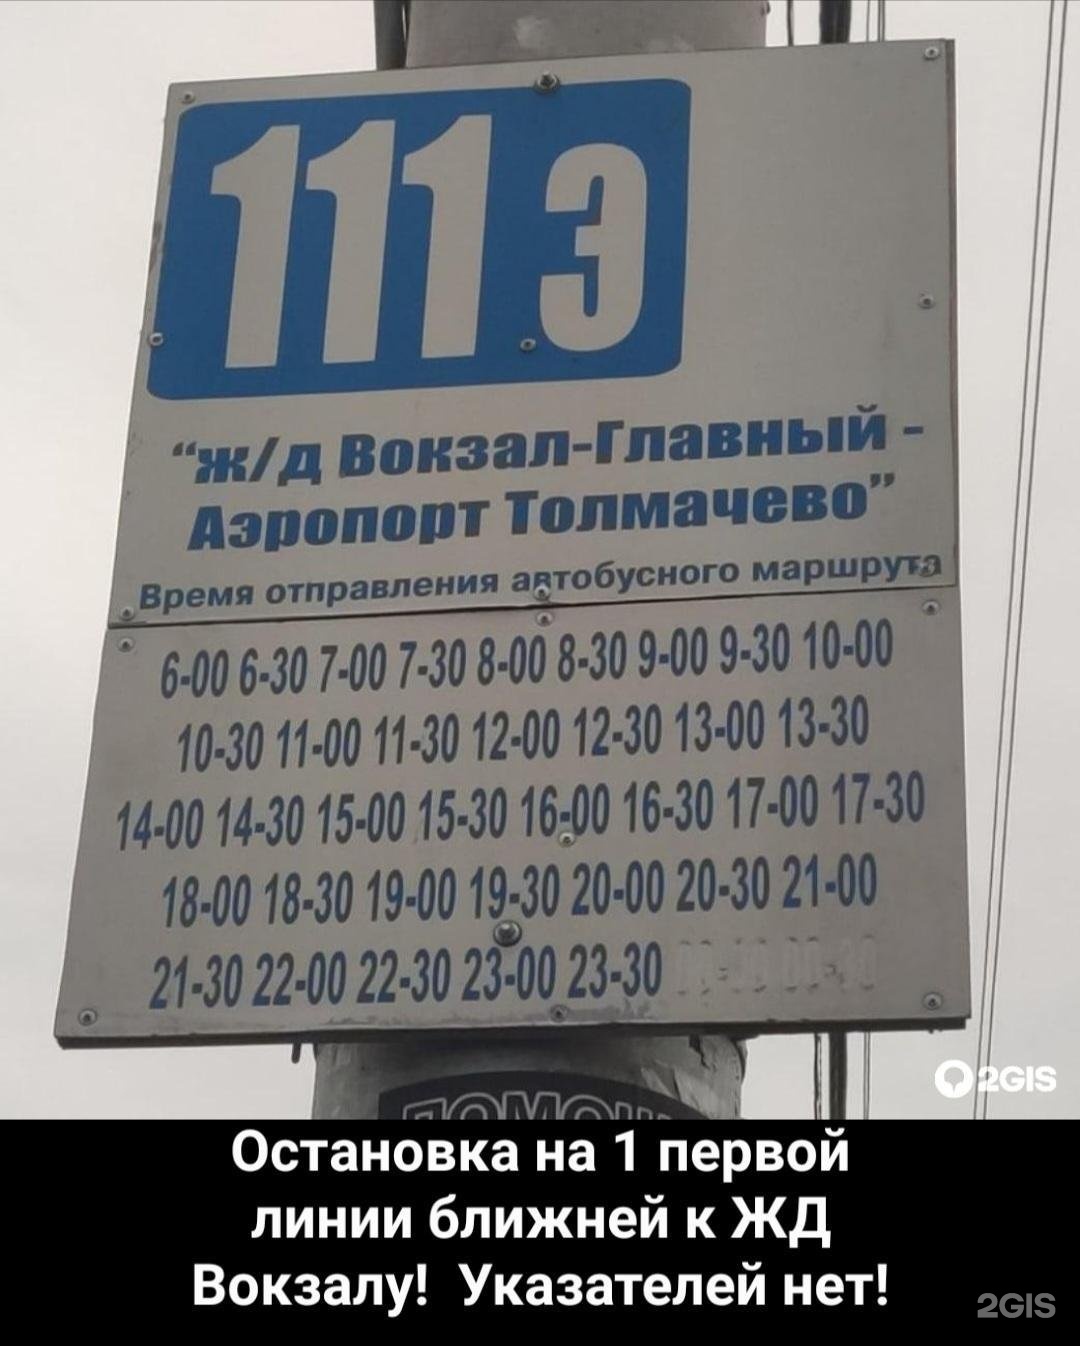 Автобус из аэропорта новосибирска. Автобус 111 э Толмачево Новосибирск. Расписание автобуса 111э Новосибирск. 111 Автобус Новосибирск расписание. Маршрут 111 автобуса Новосибирск.